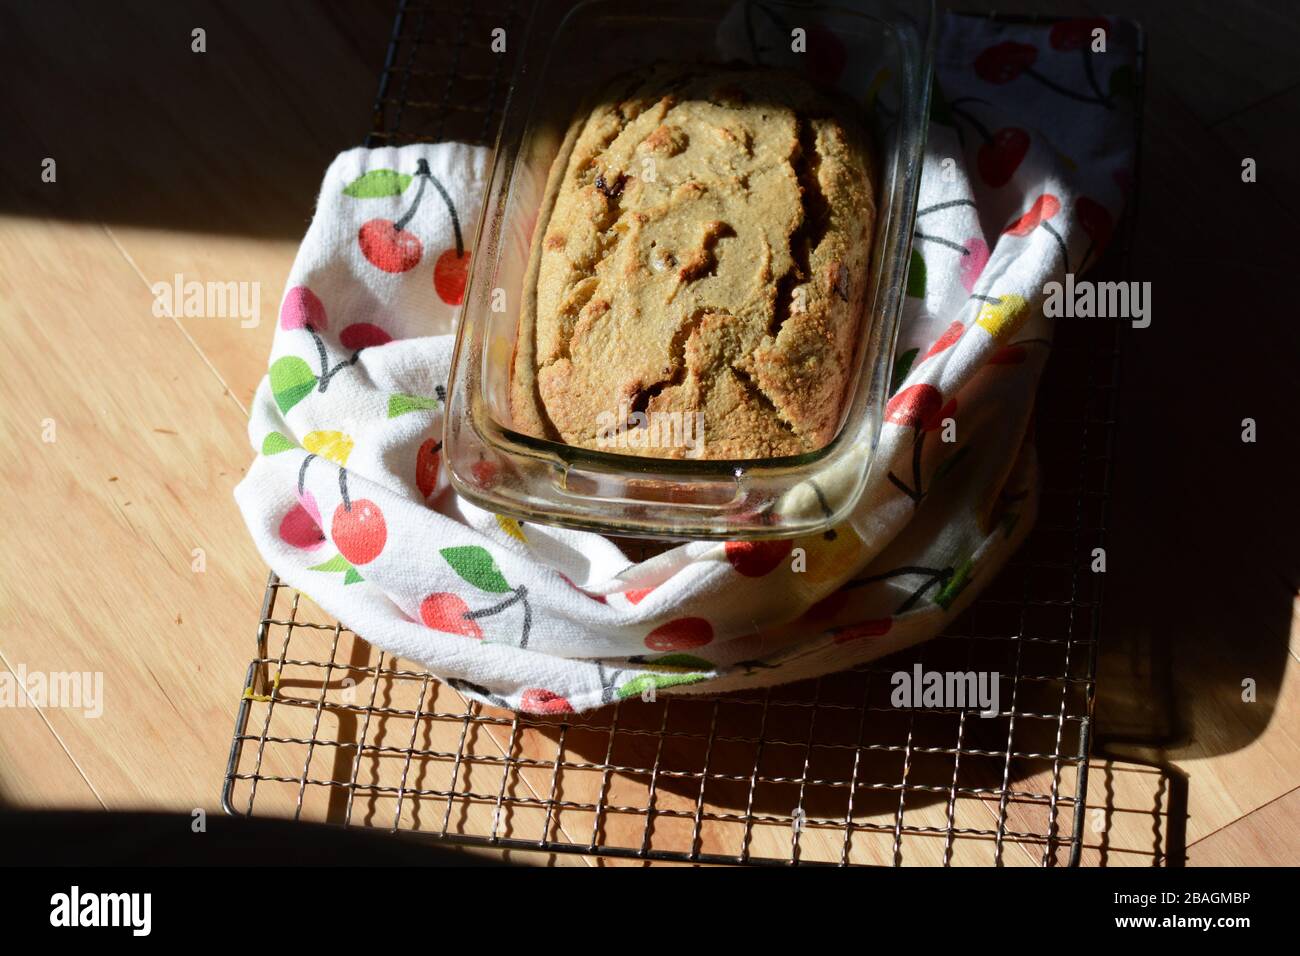 Fotografia di pane fatto in casa appena sfornato su una griglia di raffreddamento. Pane veloce. Pane alla banana con patatine al cioccolato. Foto Stock